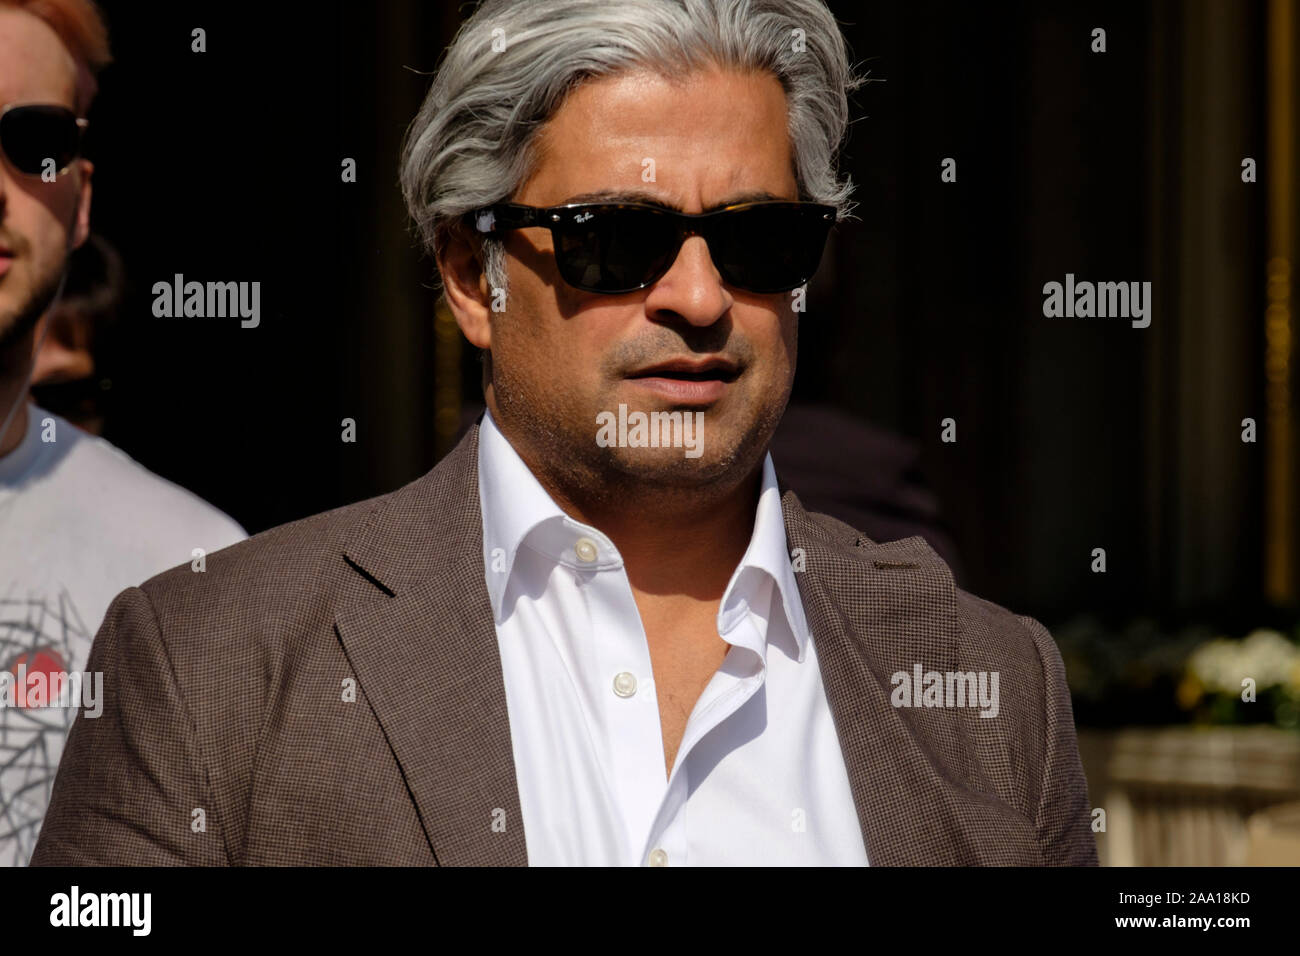 Maschio, 40s, capelli grigi, occhiali da sole Ray Ban, aspetto mediorientale su London Street. Foto Stock